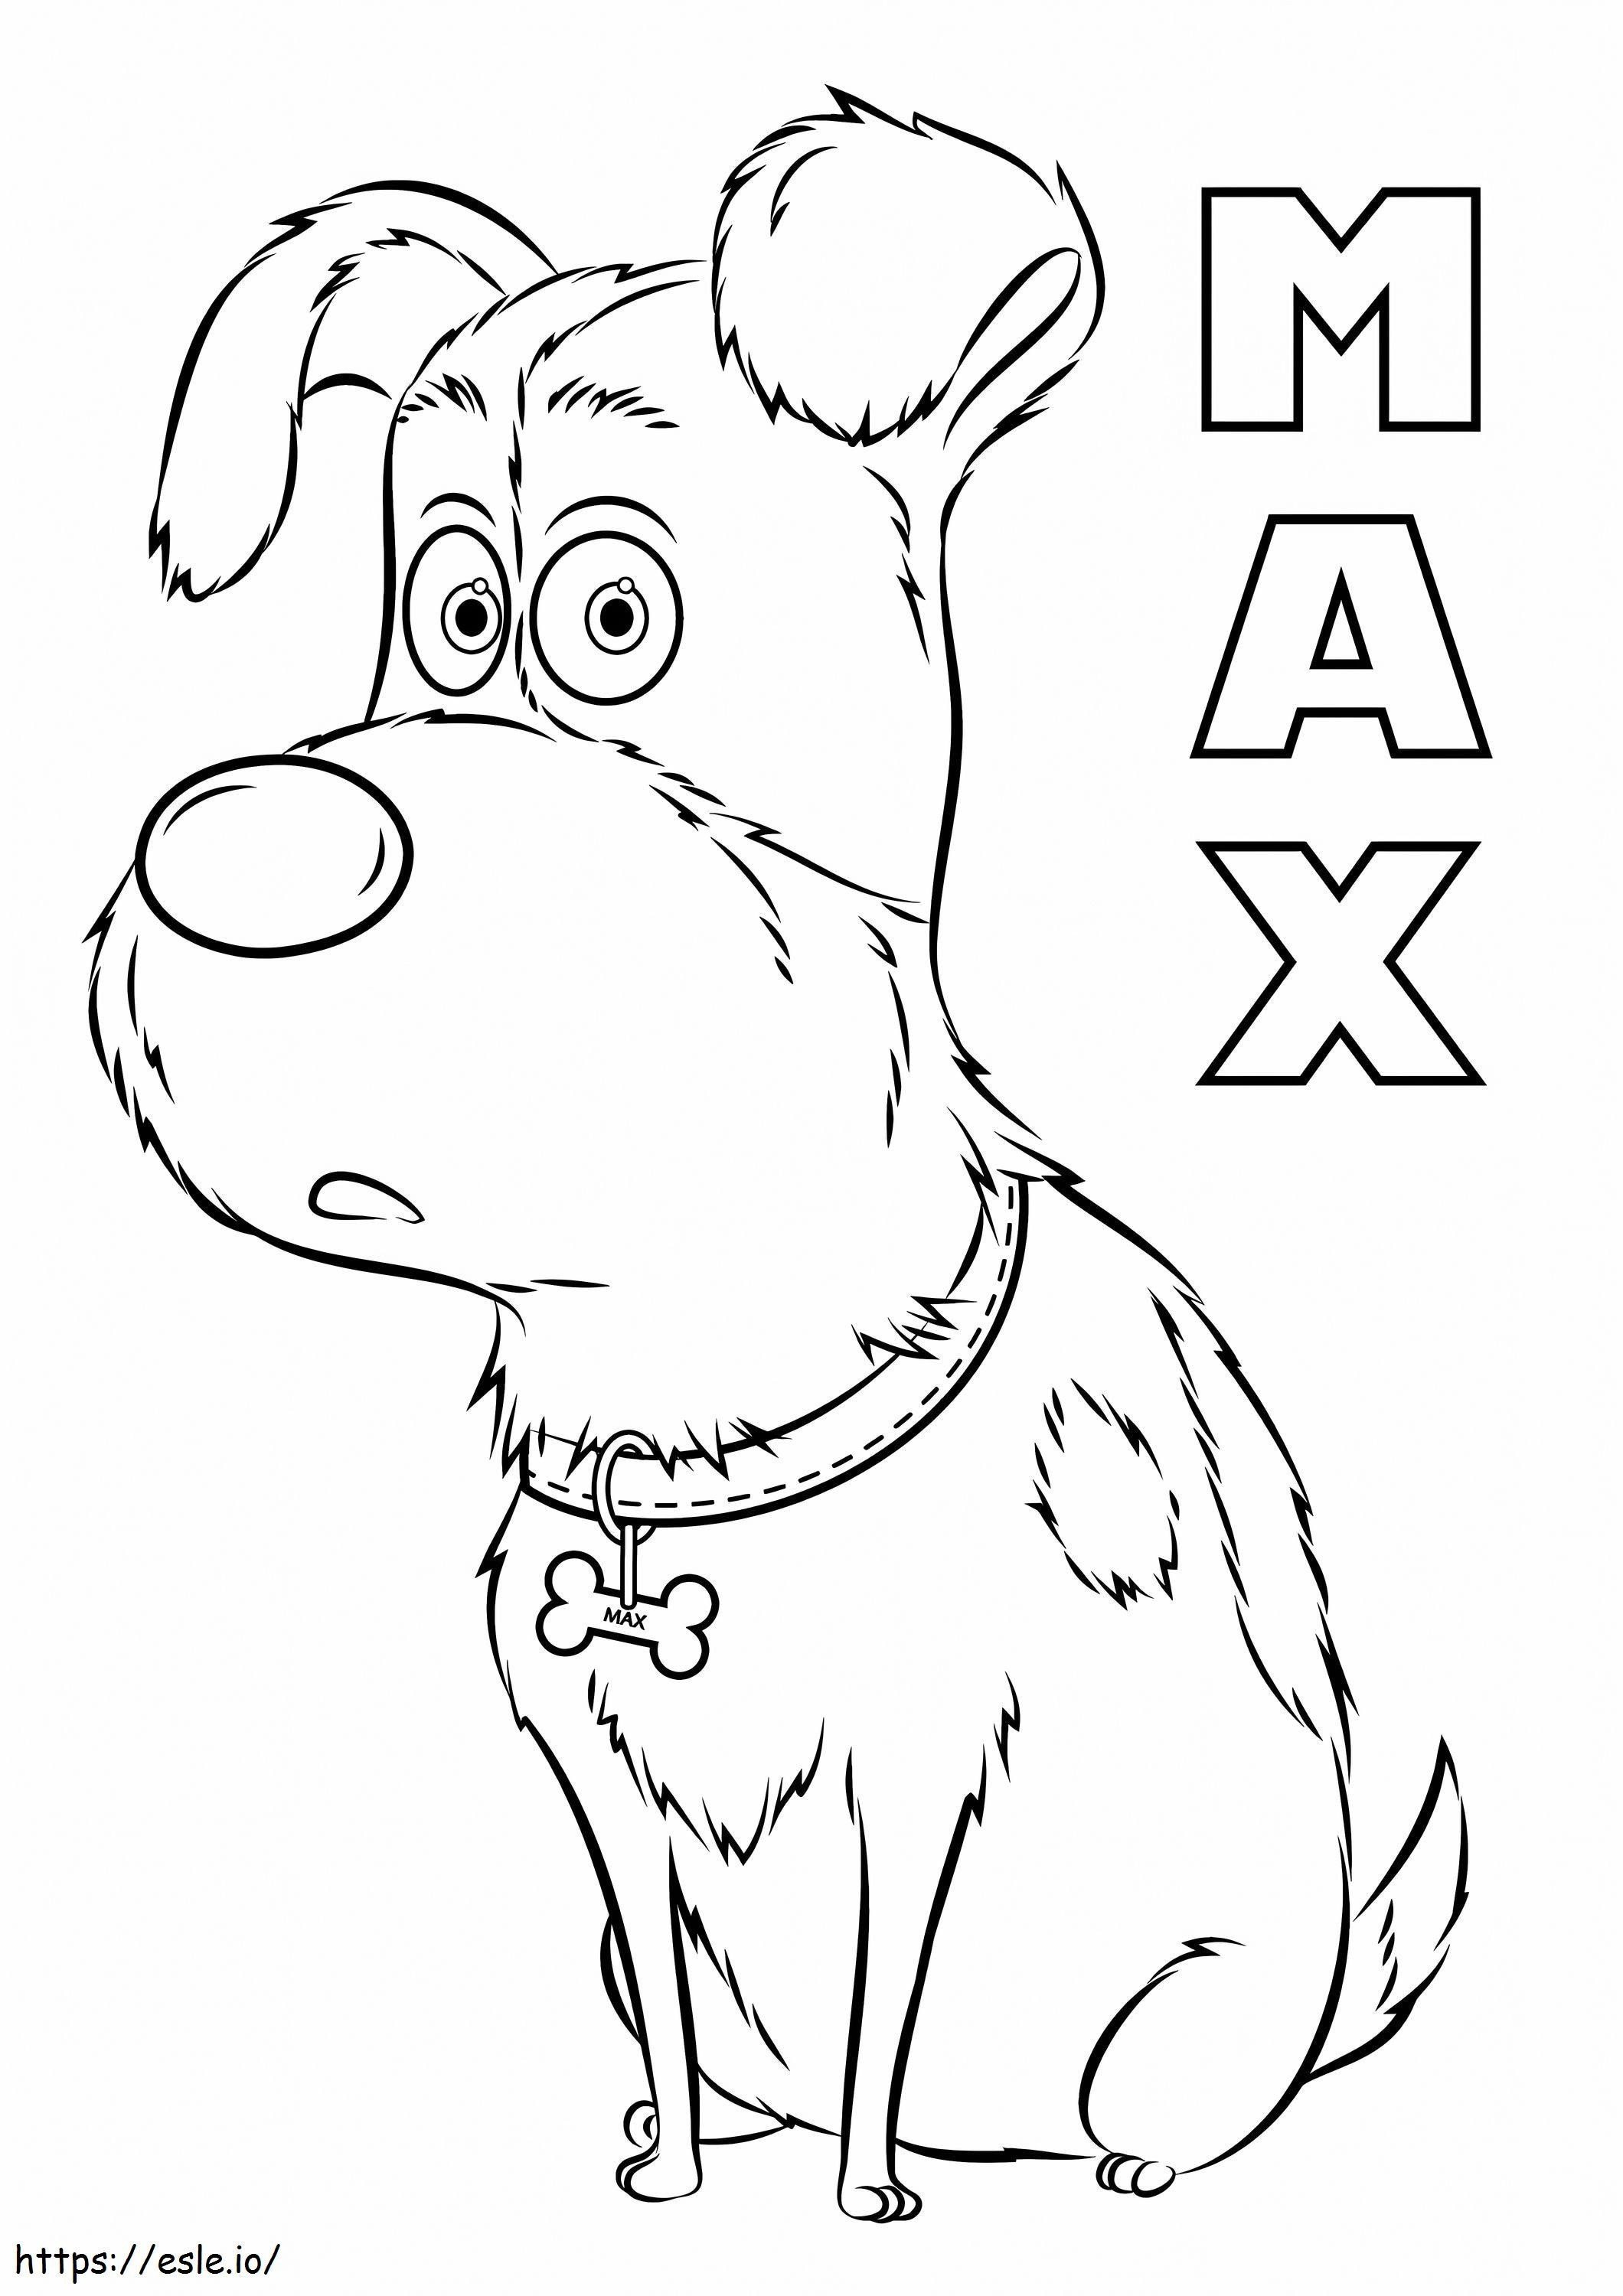  Max aus dem geheimen Leben der Haustiere, A4 ausmalbilder